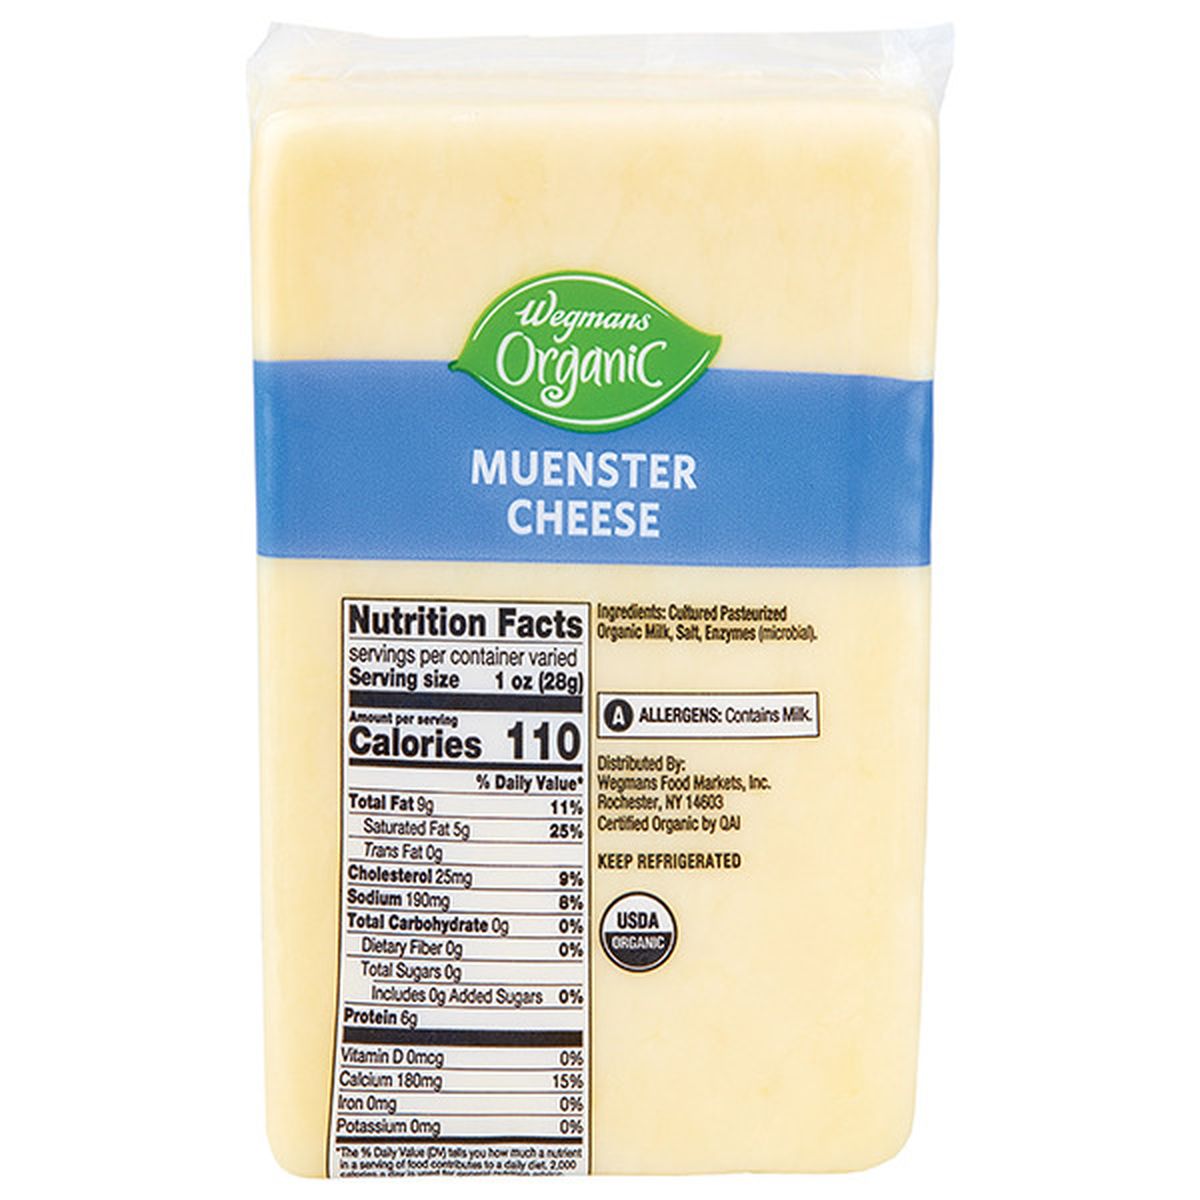 Calories in Wegmans Organic Muenster Cheese